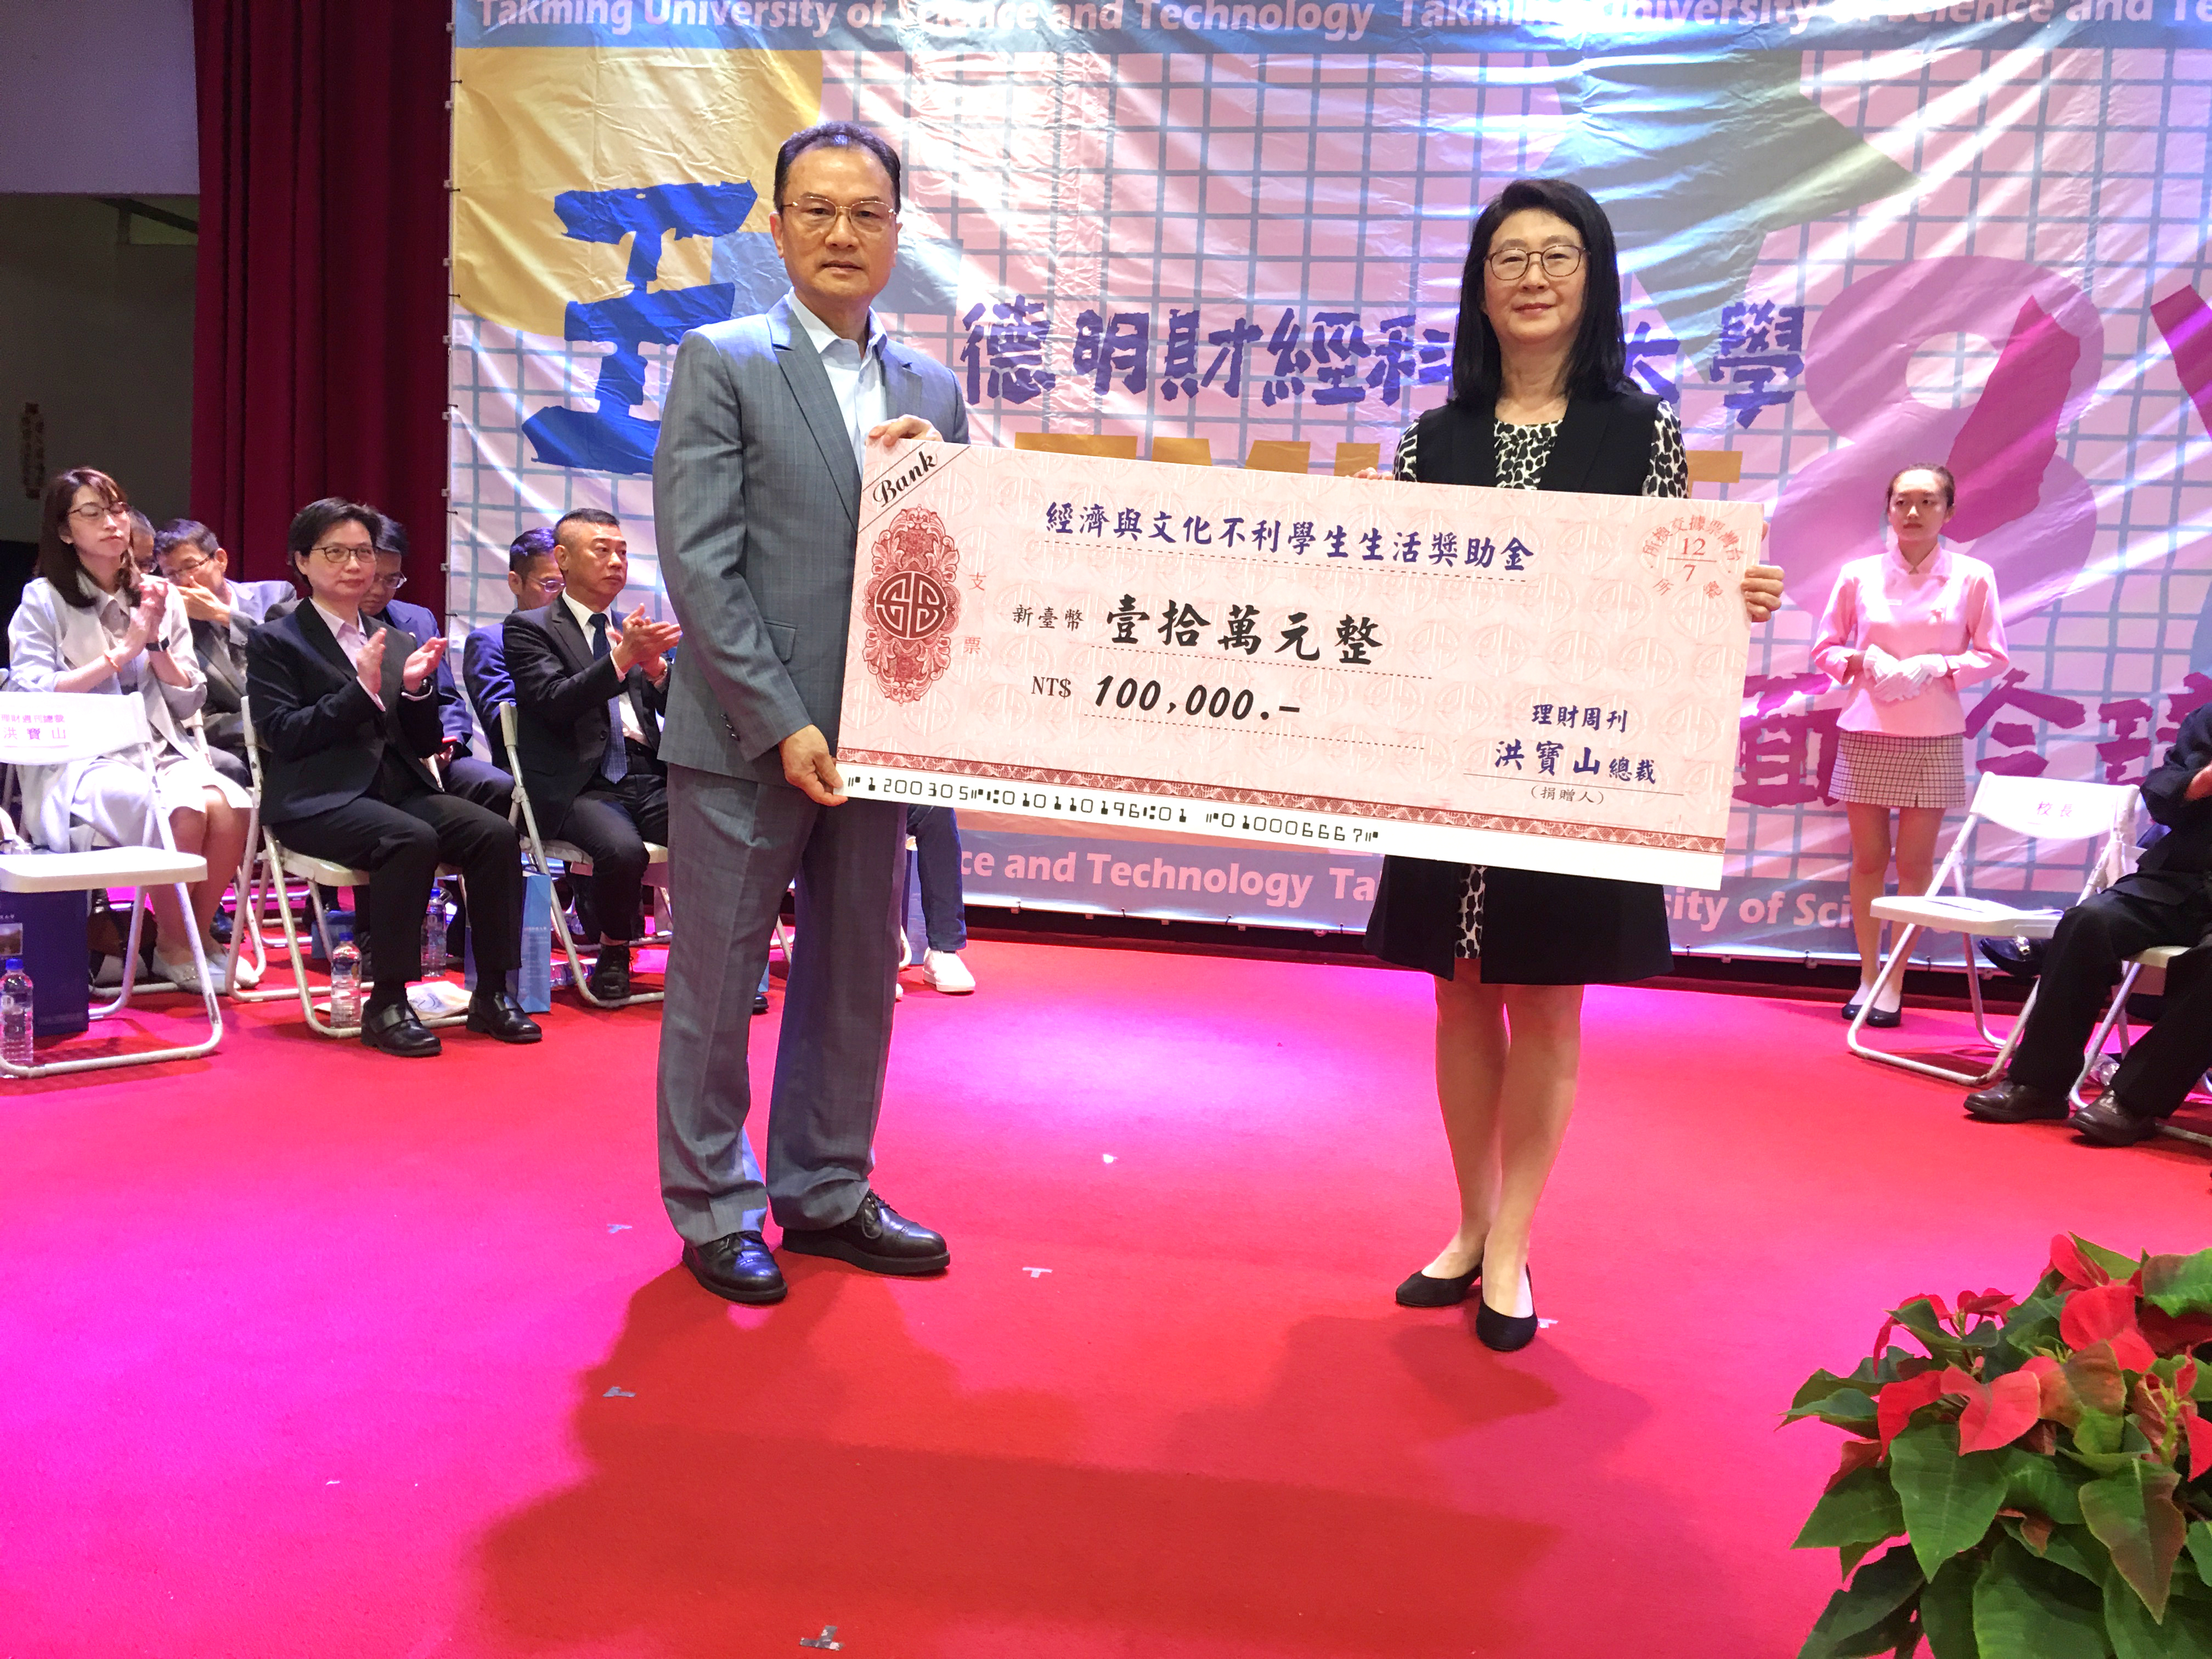 理 周 集 團 總 裁 洪 寶 山 ( 左 ) 贊 助 學 校 獎 助 金 ， 由 校 長 盧 秋 玲 代 表 接 受 。 